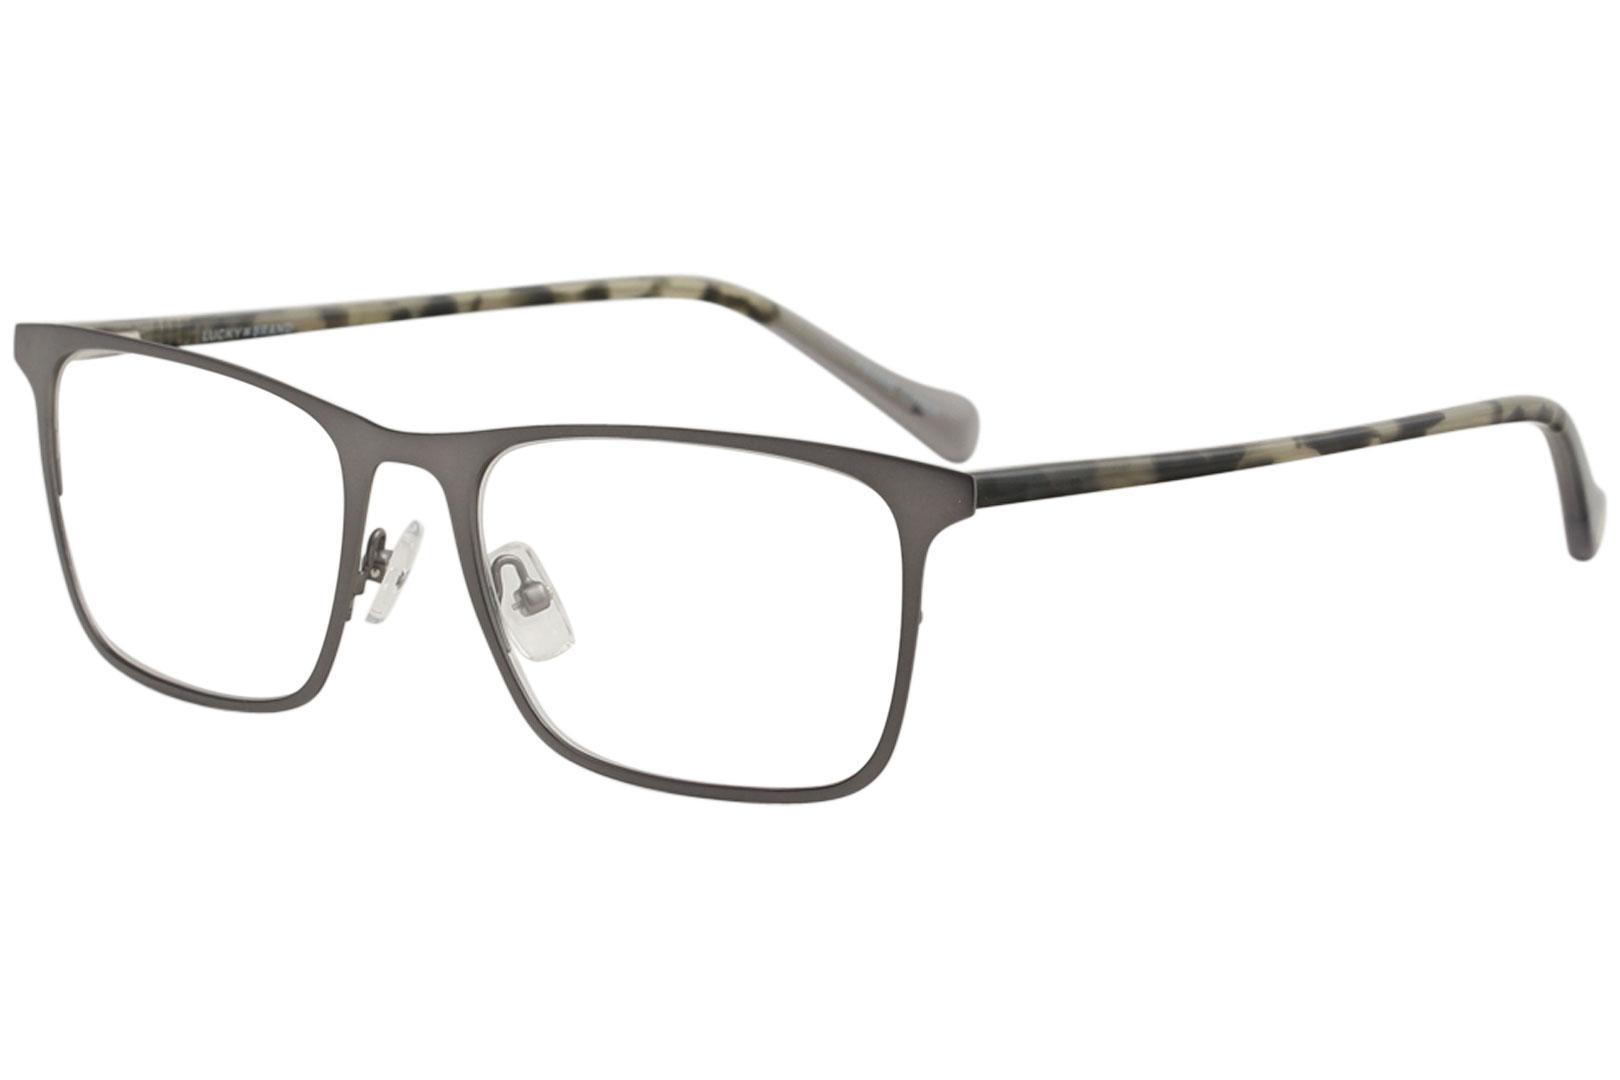 Lucky Brand Men's Eyeglasses D308 D/308 Grey Full Rim Optical Frame 54mm - Grey - Lens 54 Bridge 19 Temple 145mm